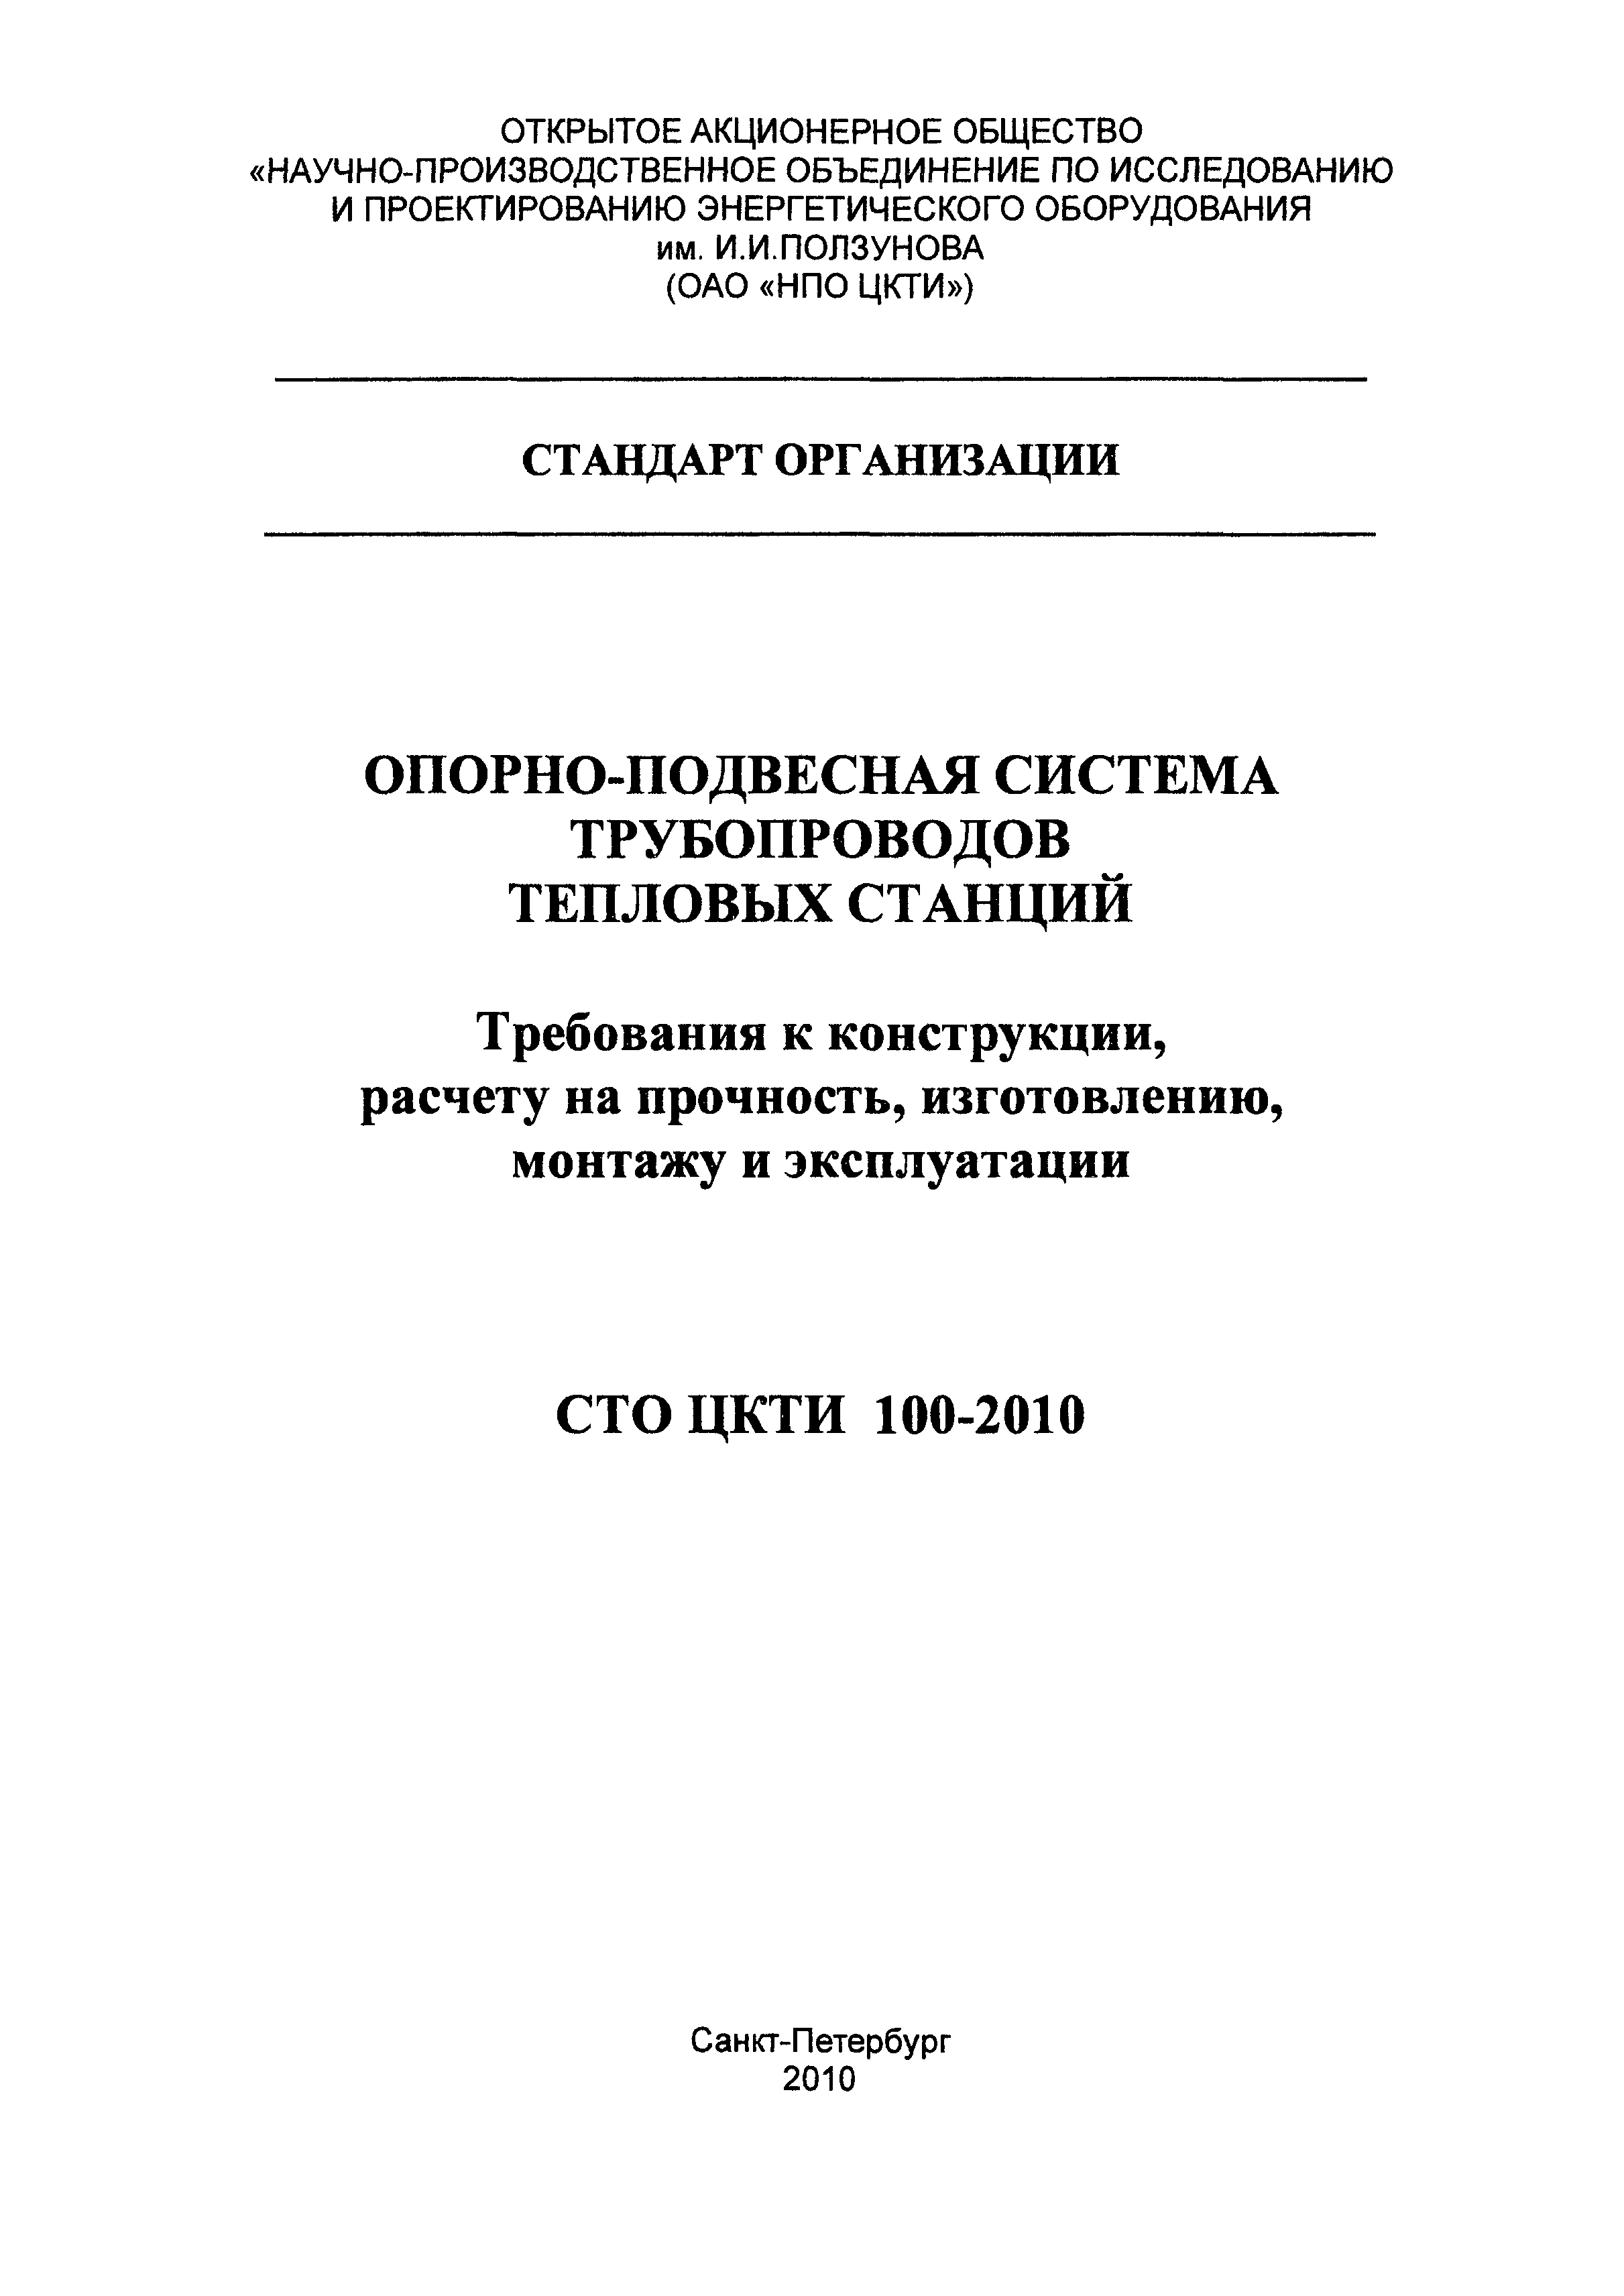 СТО ЦКТИ 100-2010